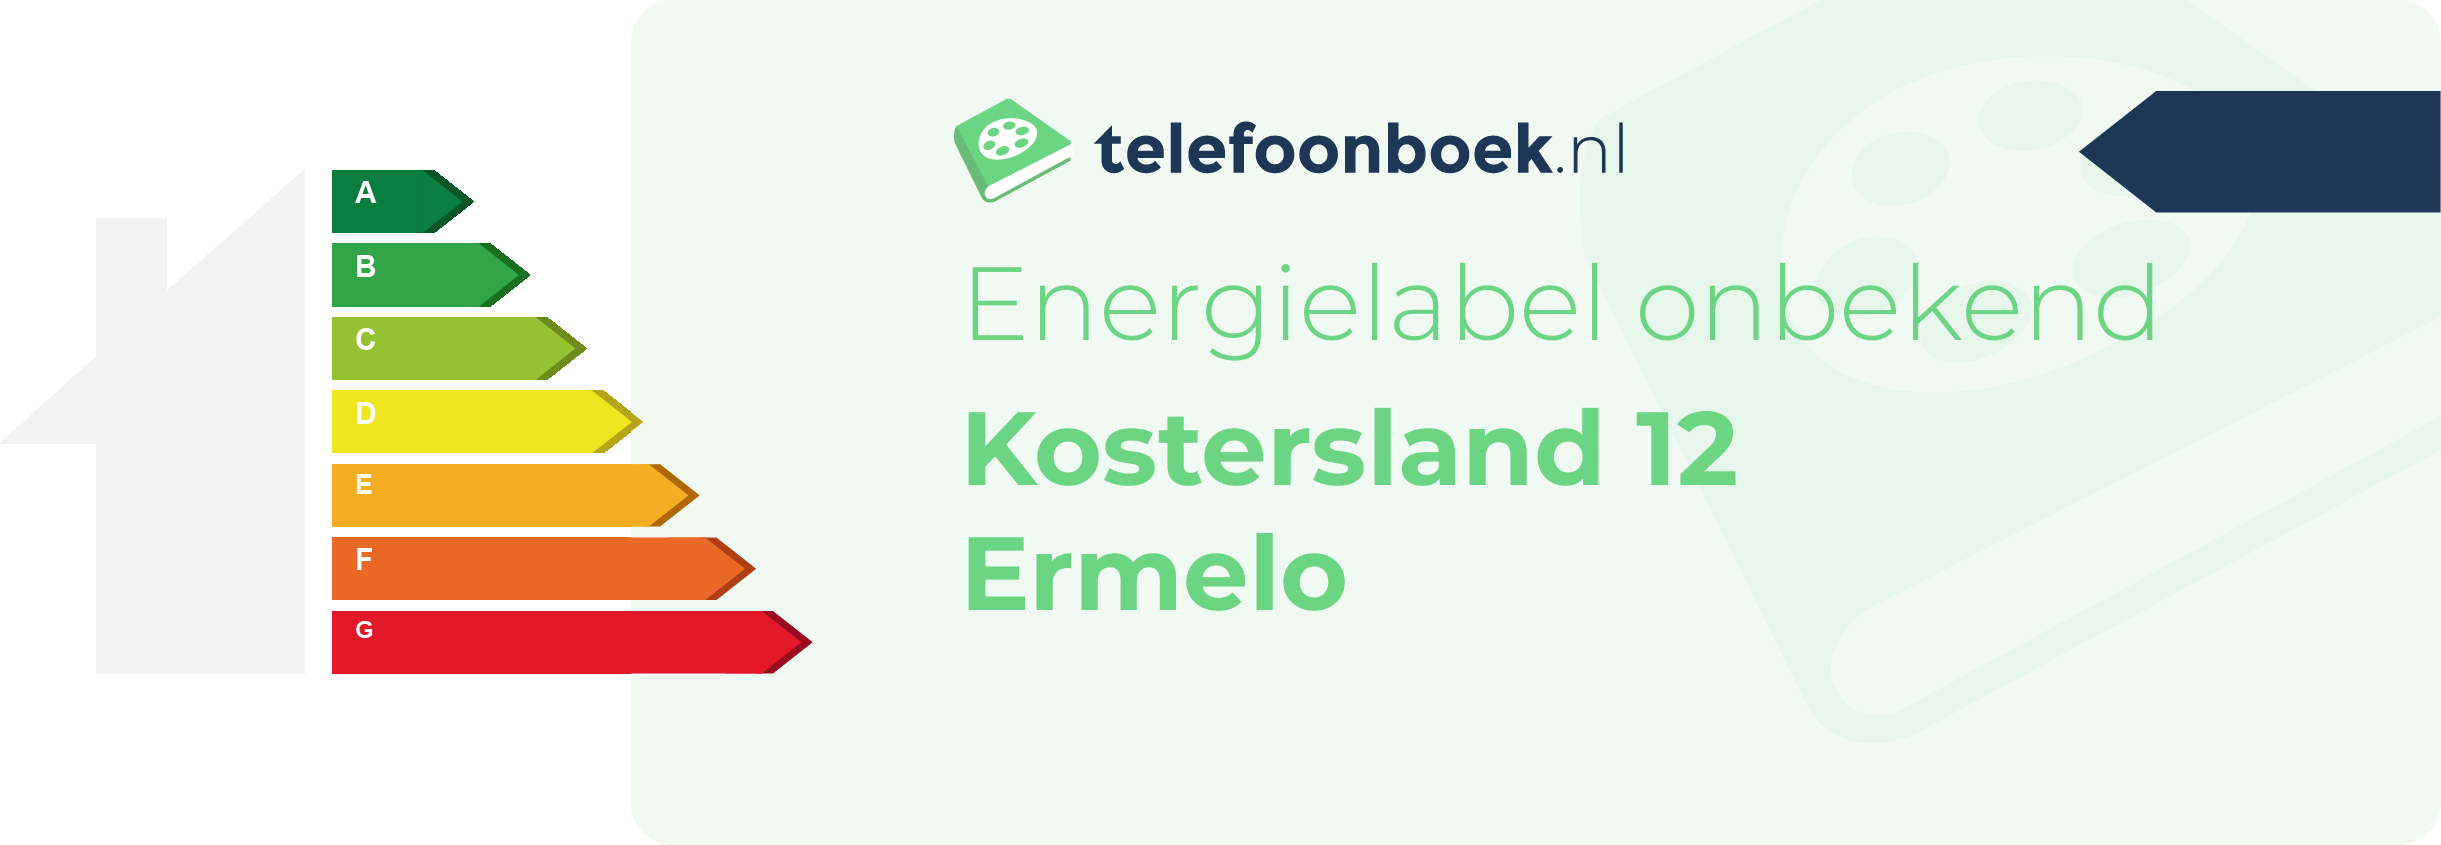 Energielabel Kostersland 12 Ermelo